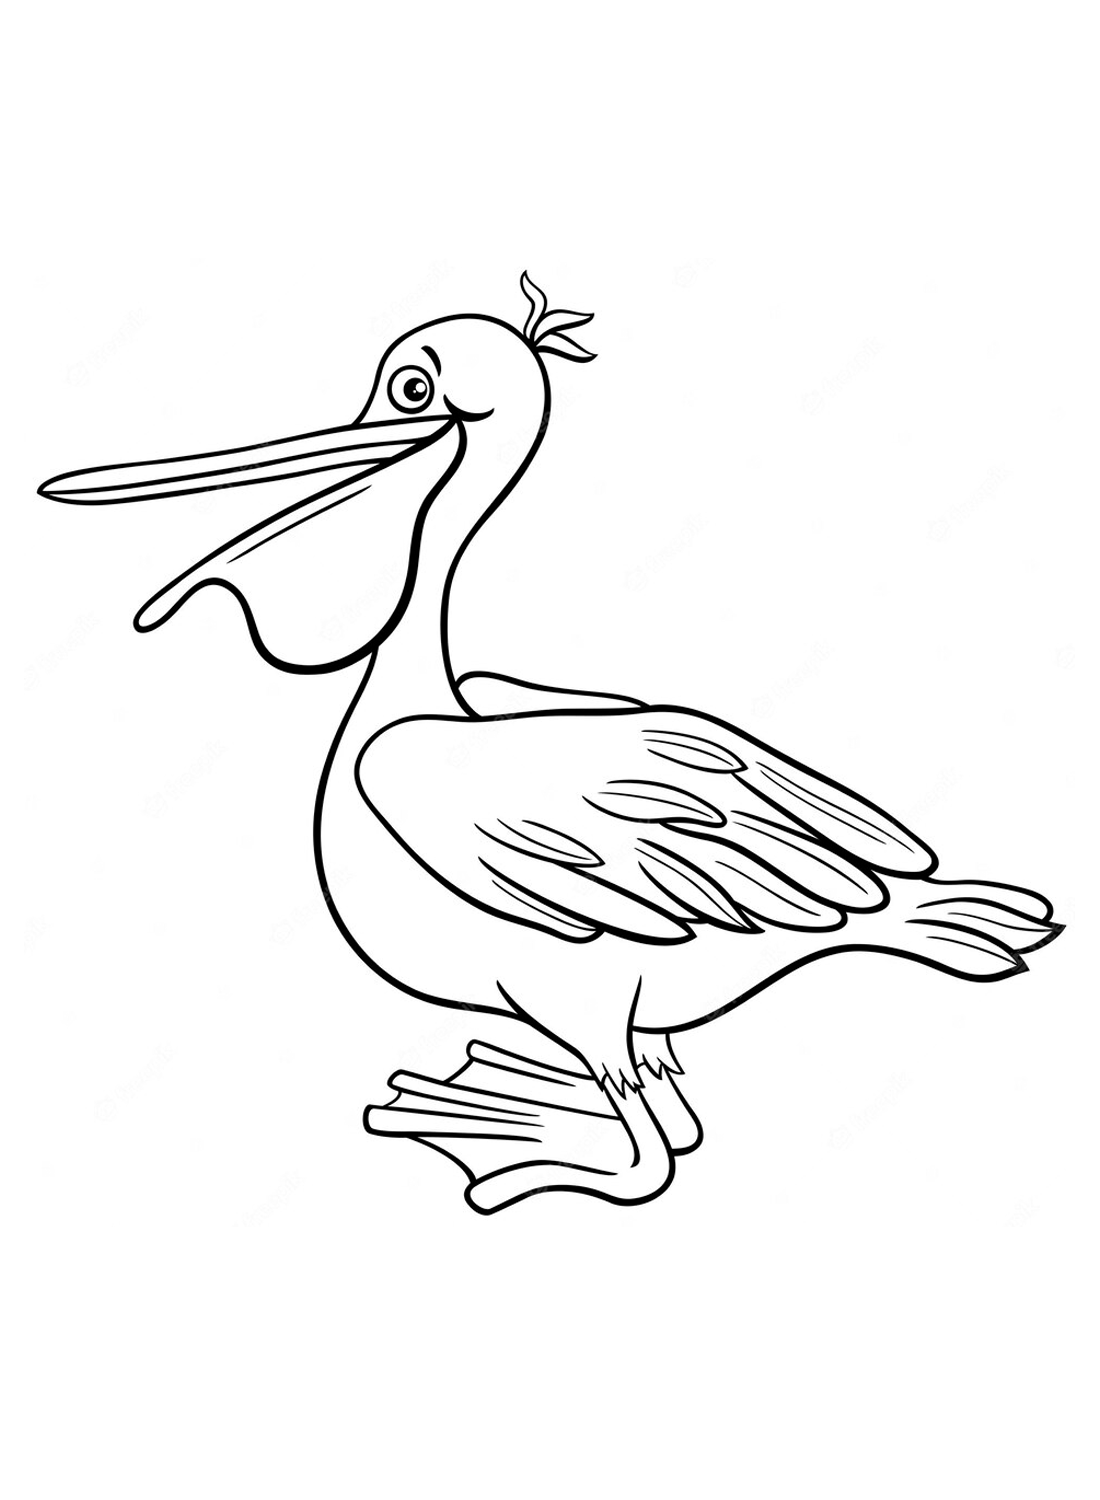 Pellicano carino e facile da Pelican